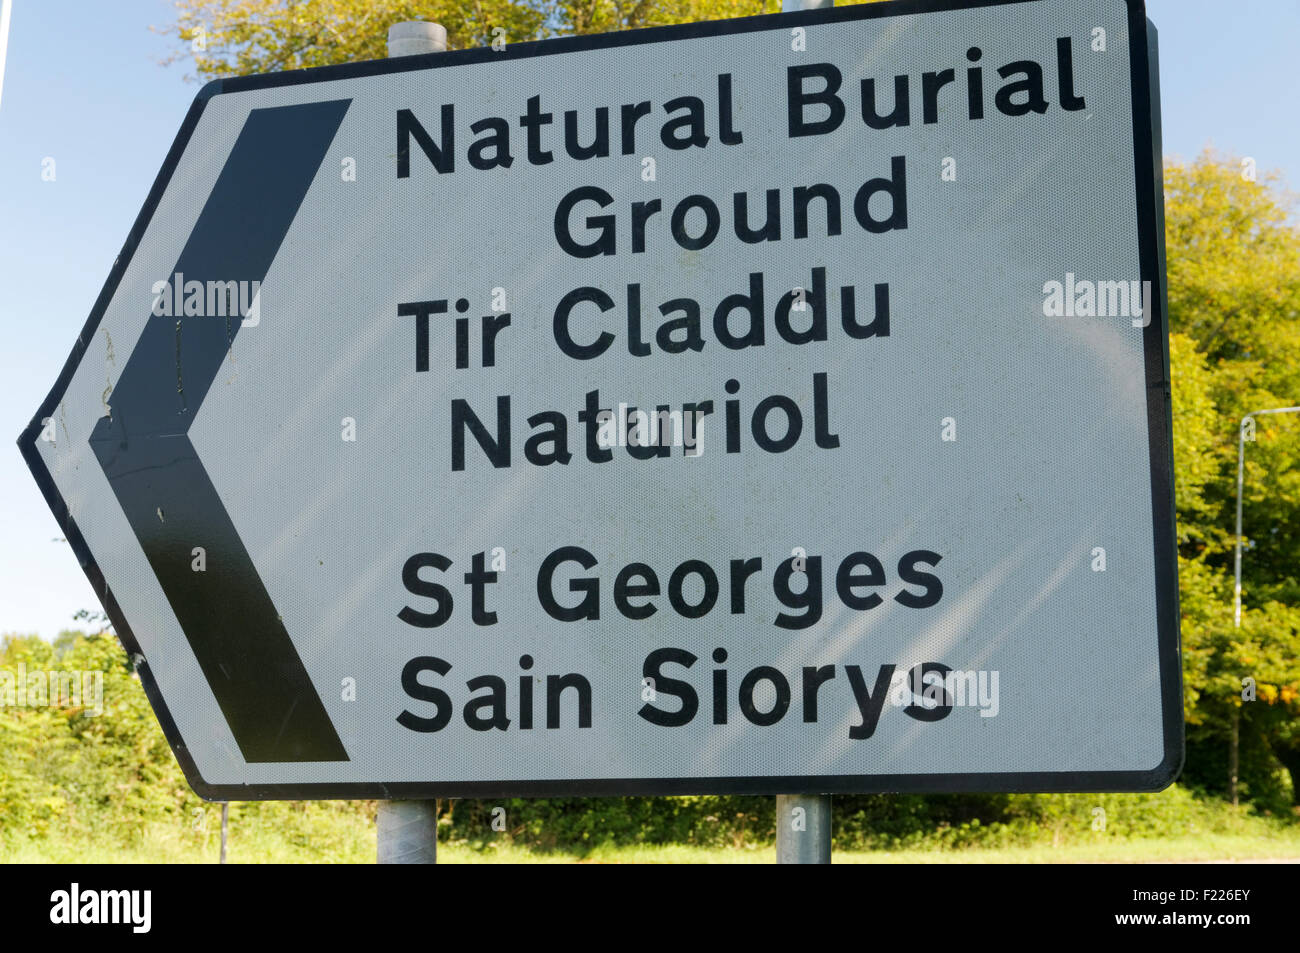 Melden Sie sich für St. Georges natürliche Begräbnisstätte, Vale von Glamorgan, South Wales, UK. Stockfoto